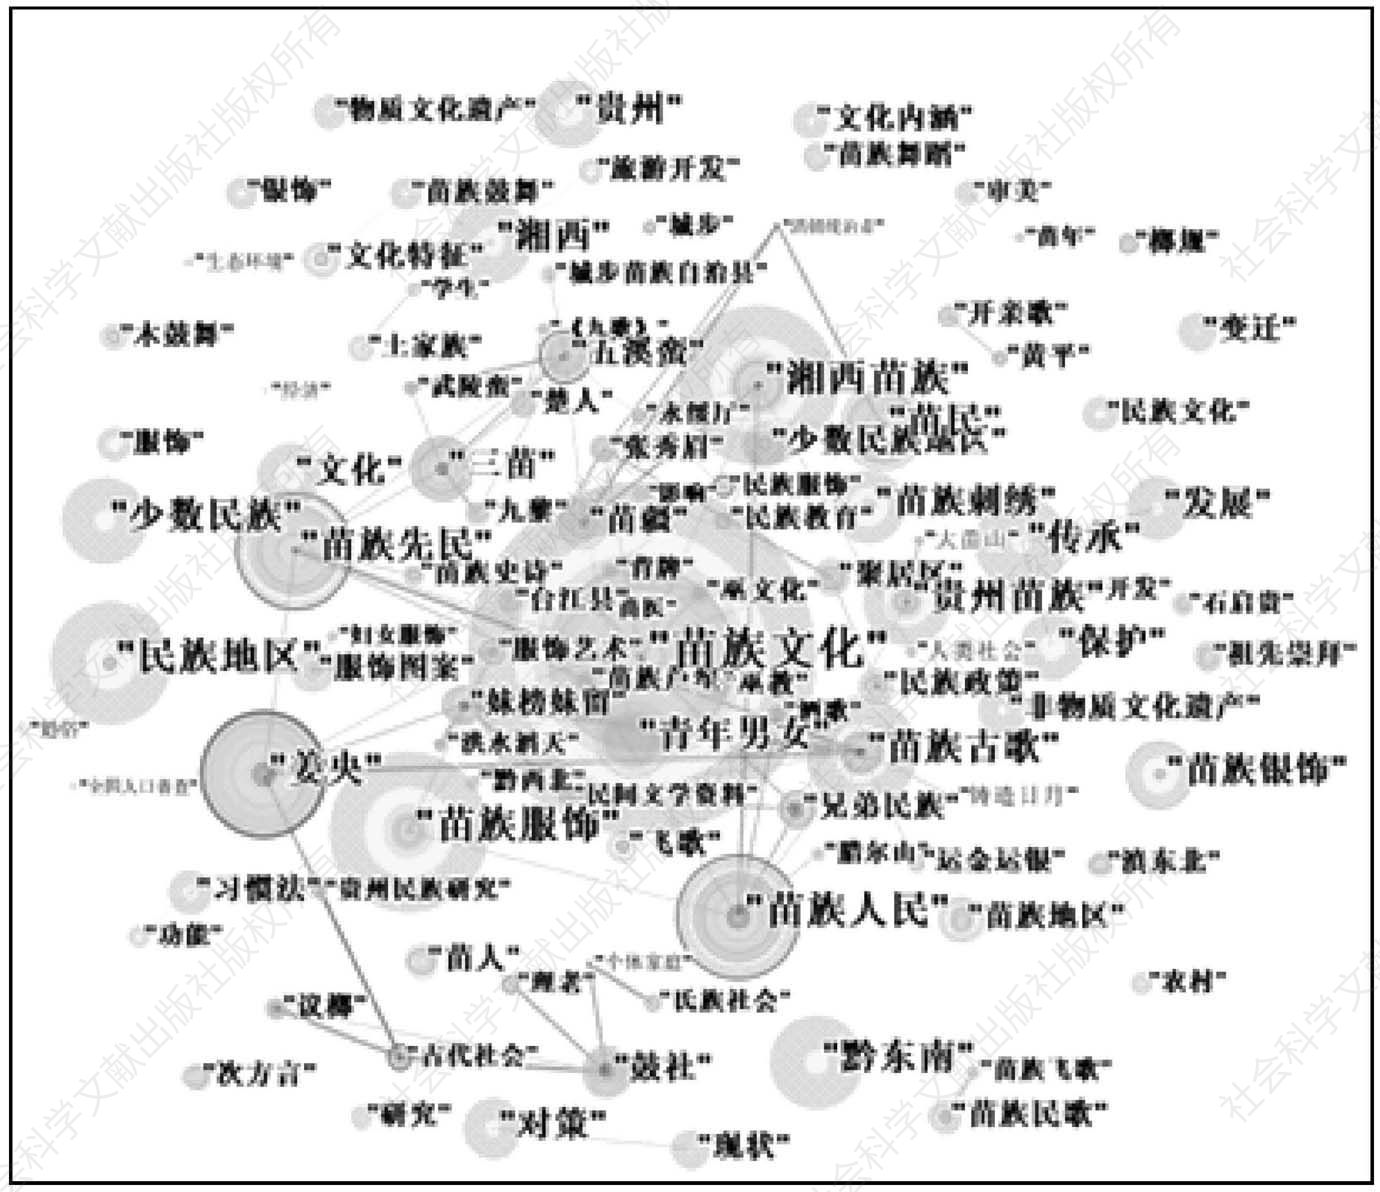 图4 苗学研究关键词共现网络图谱